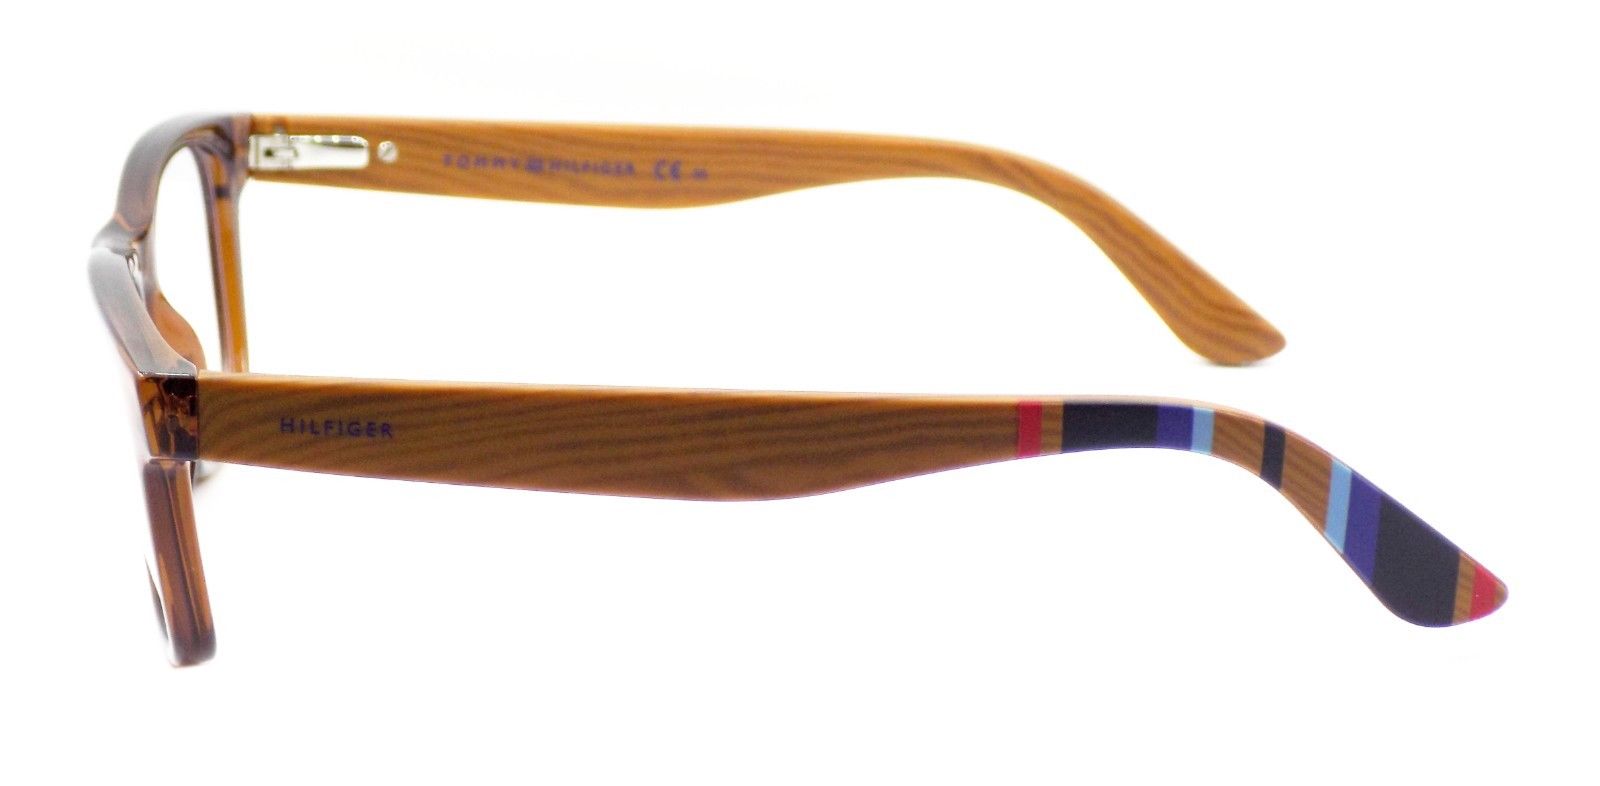 3-TOMMY HILFIGER TH 1314 X3R Men's Eyeglasses Frames 50-19-145 Brown Wood + CASE-762753040244-IKSpecs